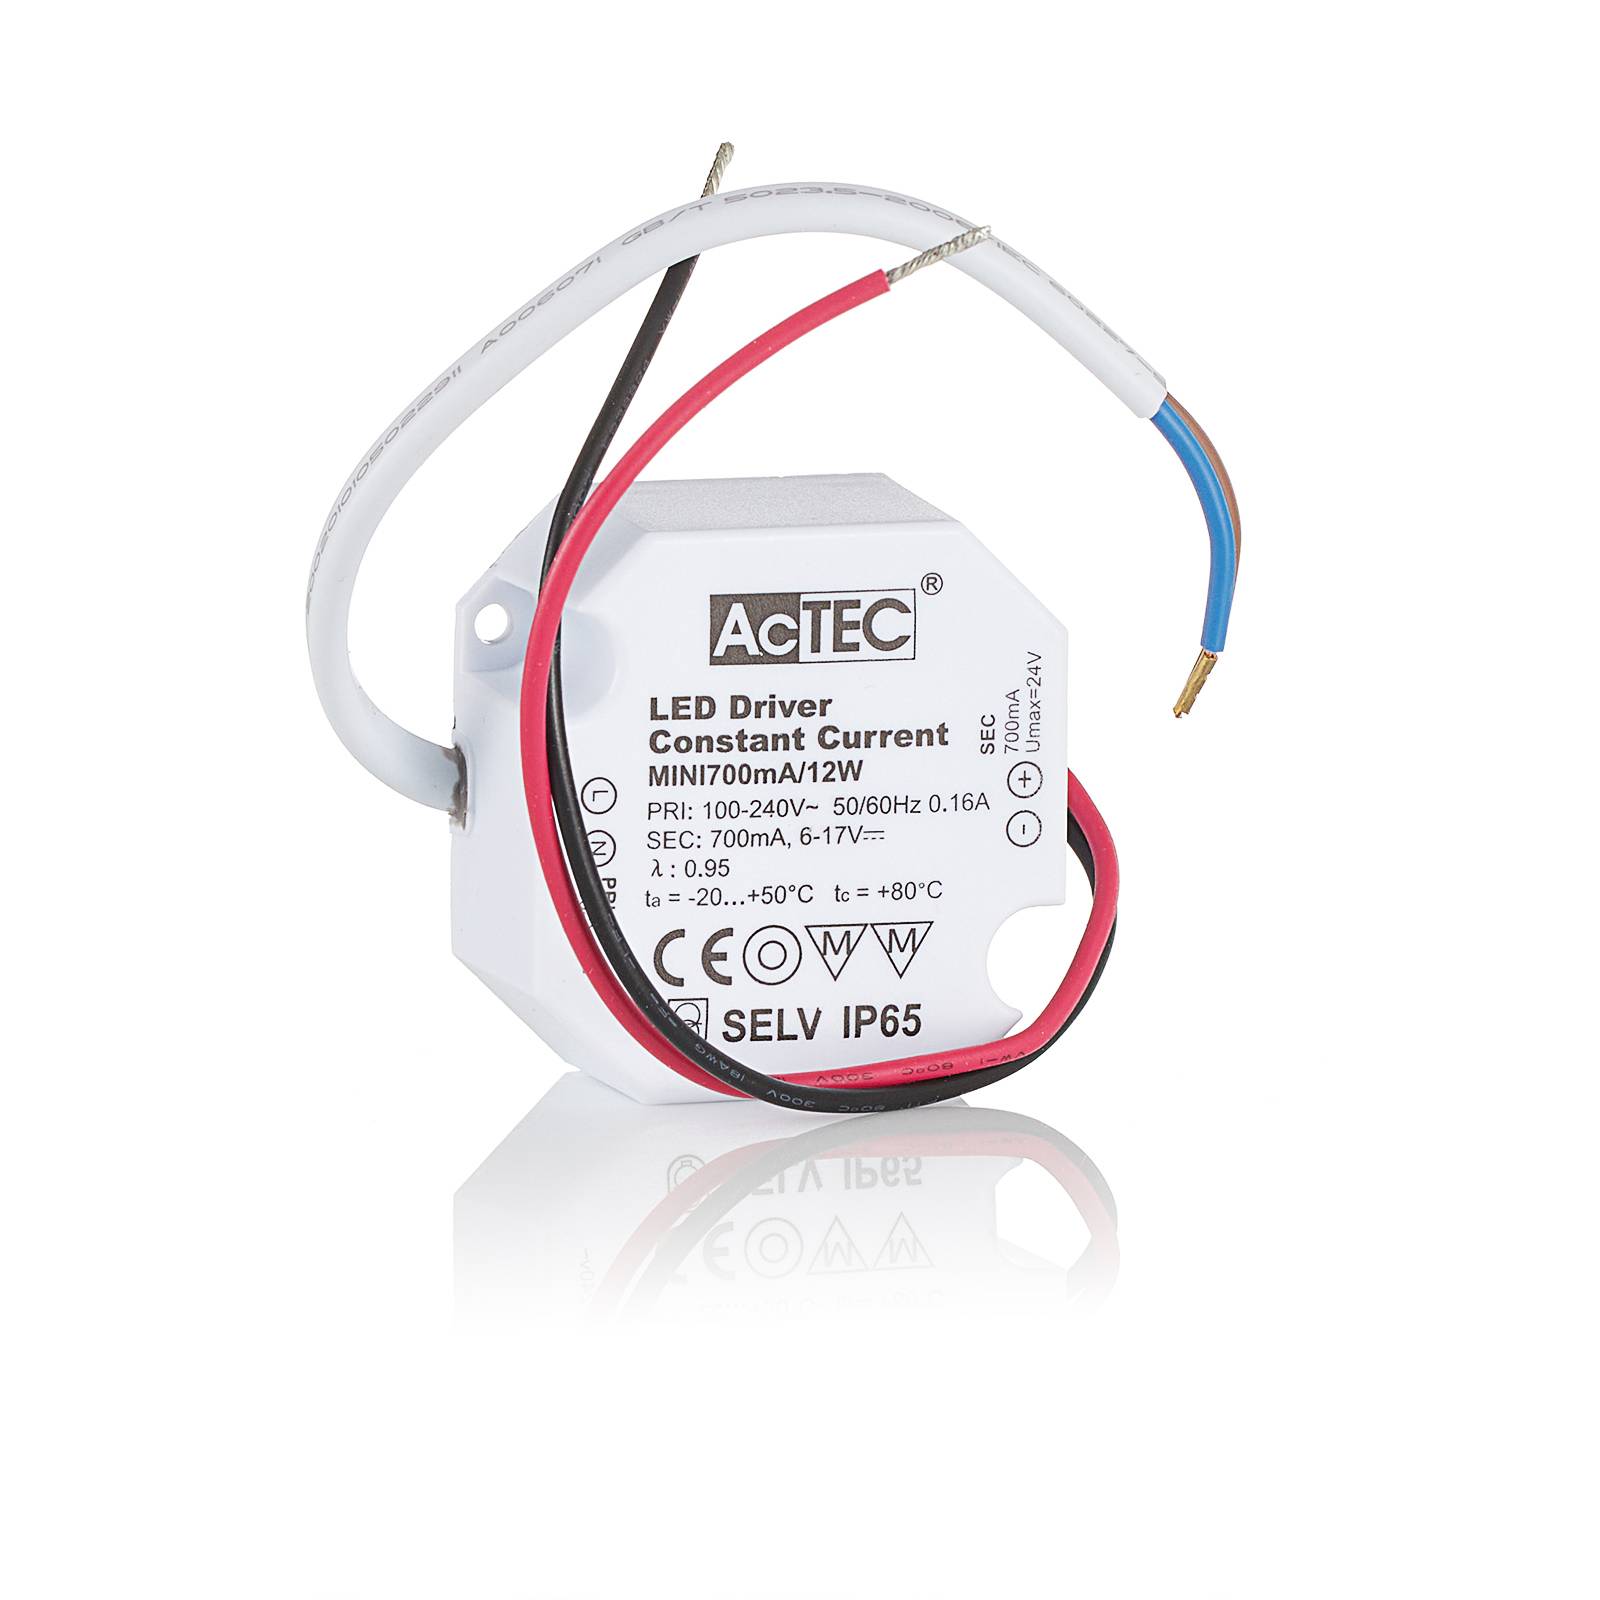 AcTEC Mini LED-Treiber CC 700mA, 12W, IP65 von AcTEC